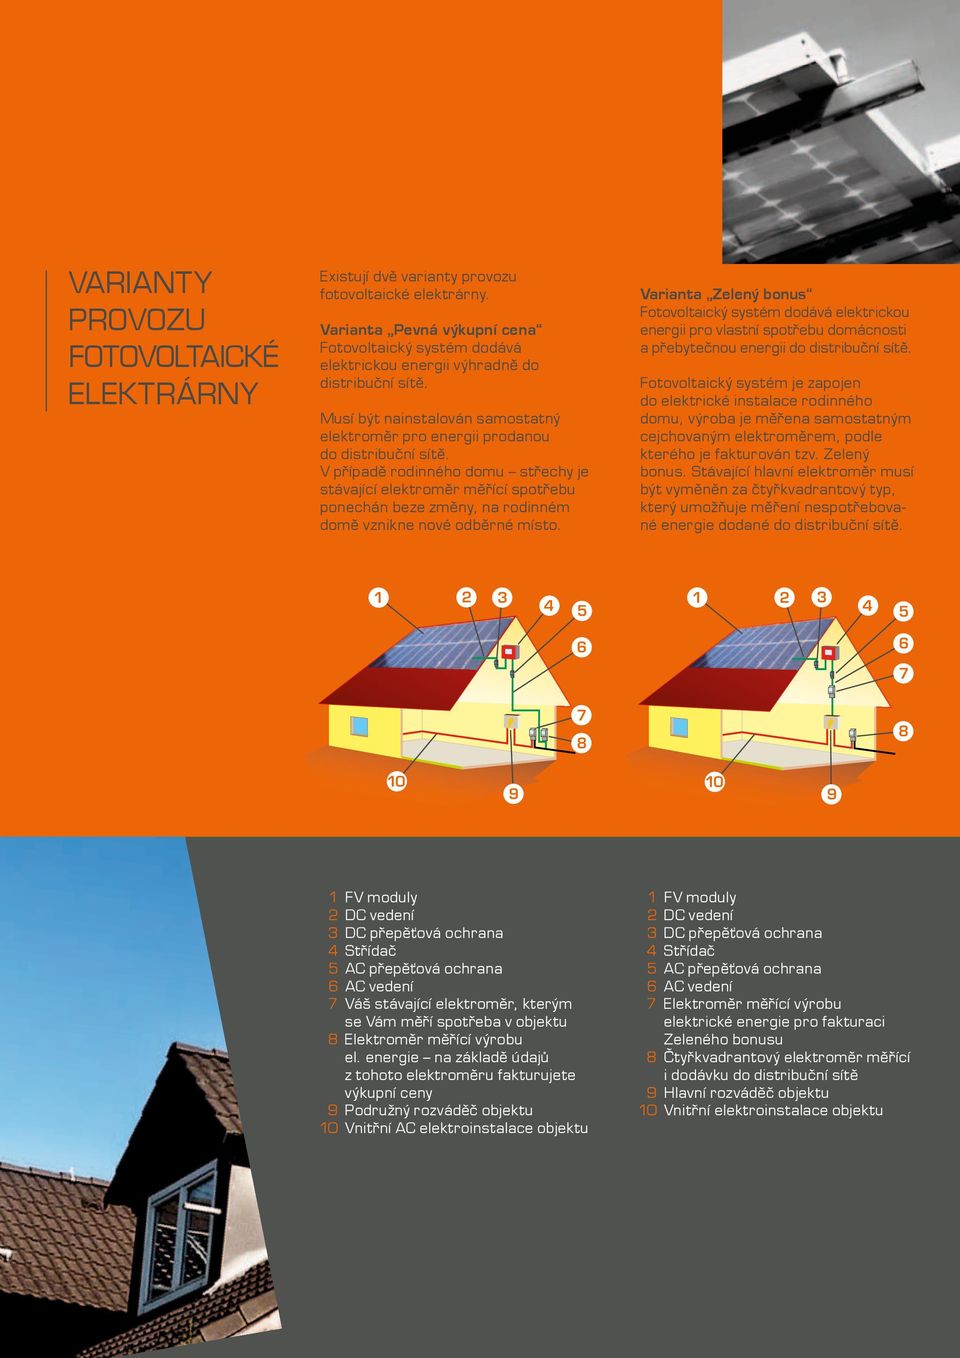 V případě rodinného domu střechy je stávající elektroměr měřící spotřebu ponechán beze změny, na rodinném domě vznikne nové odběrné místo.